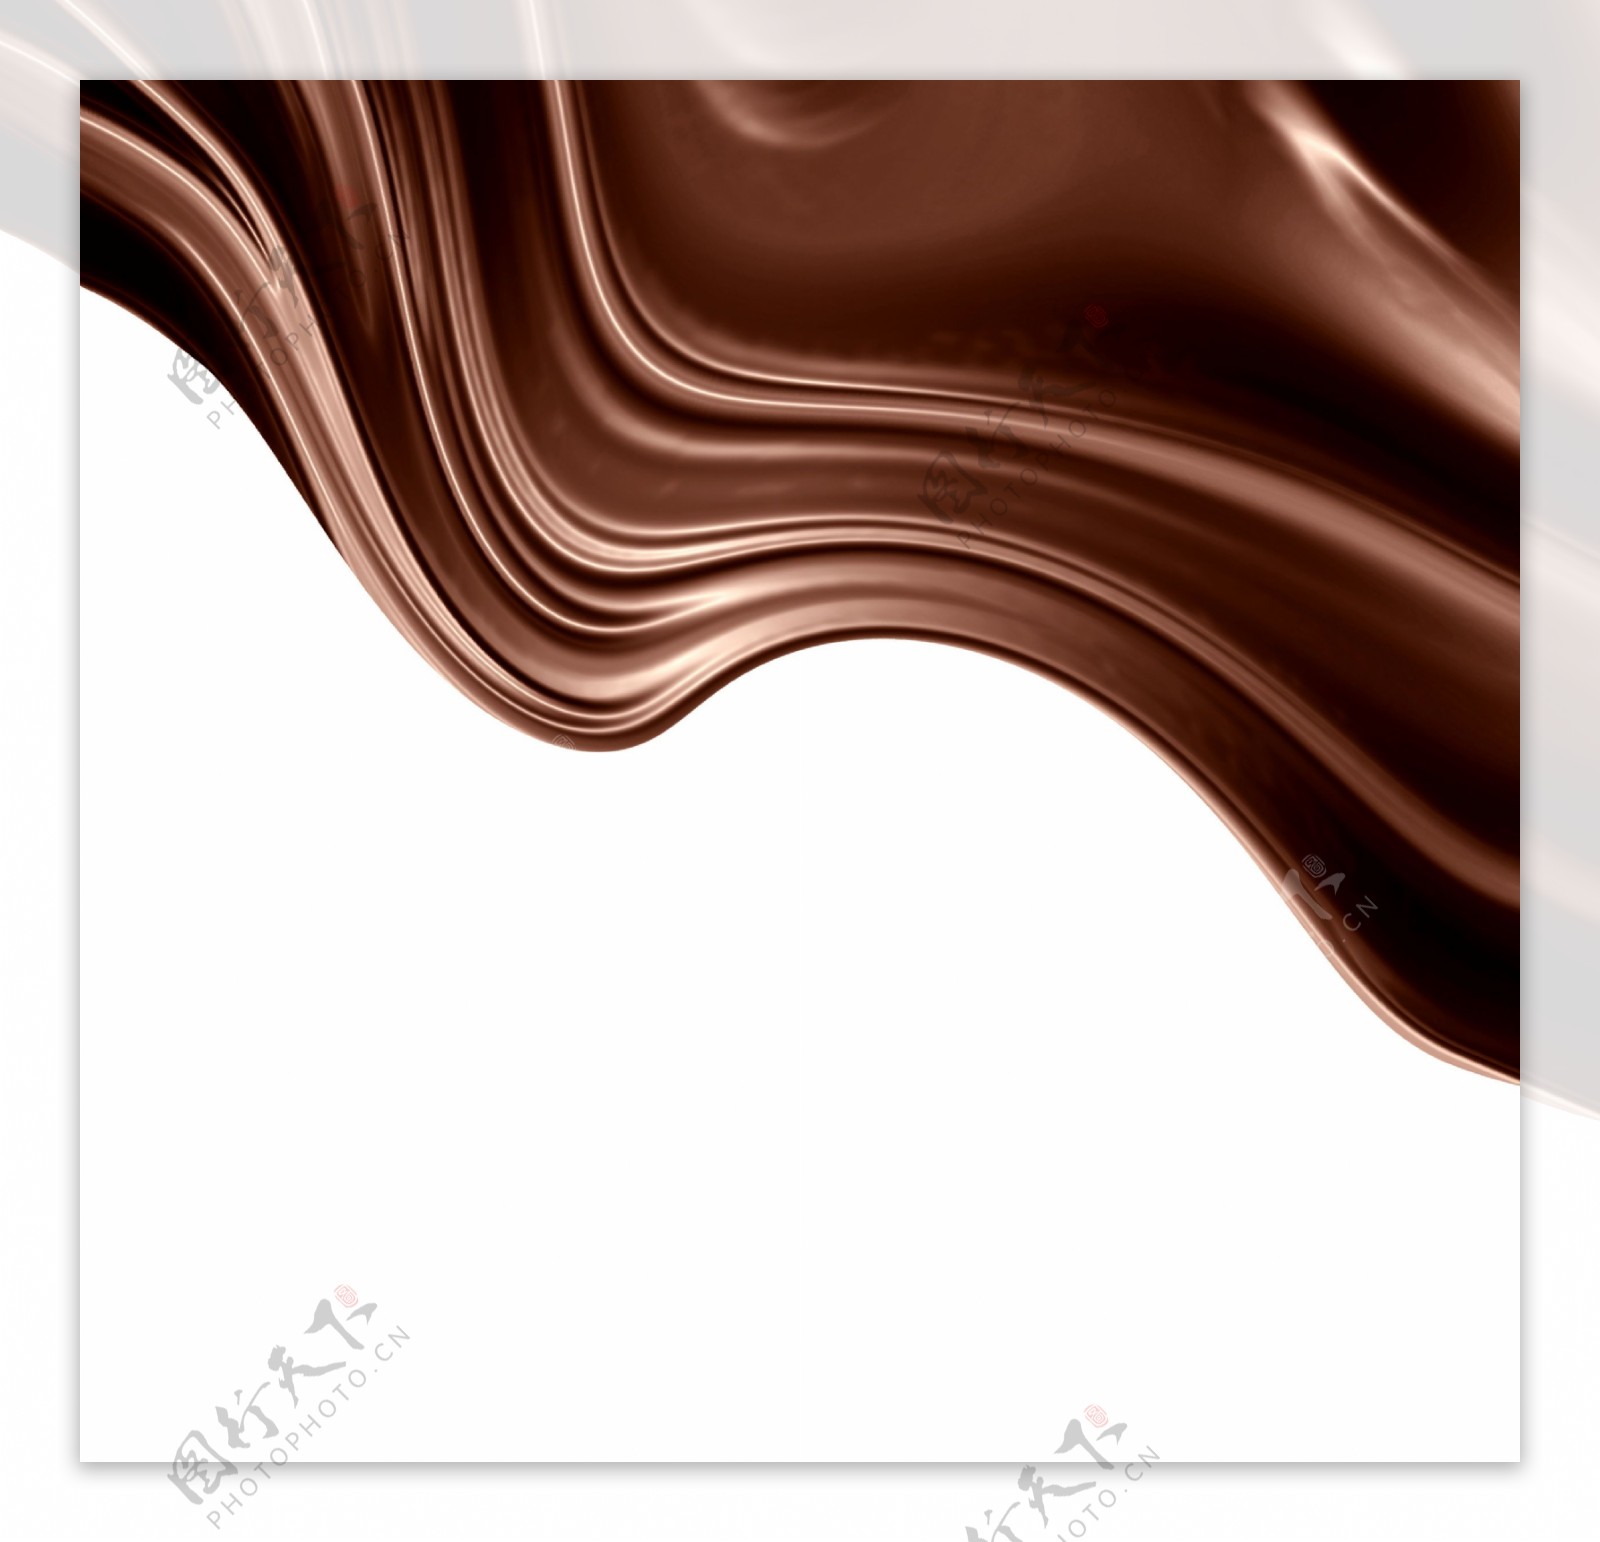 巧克力广告背景图片